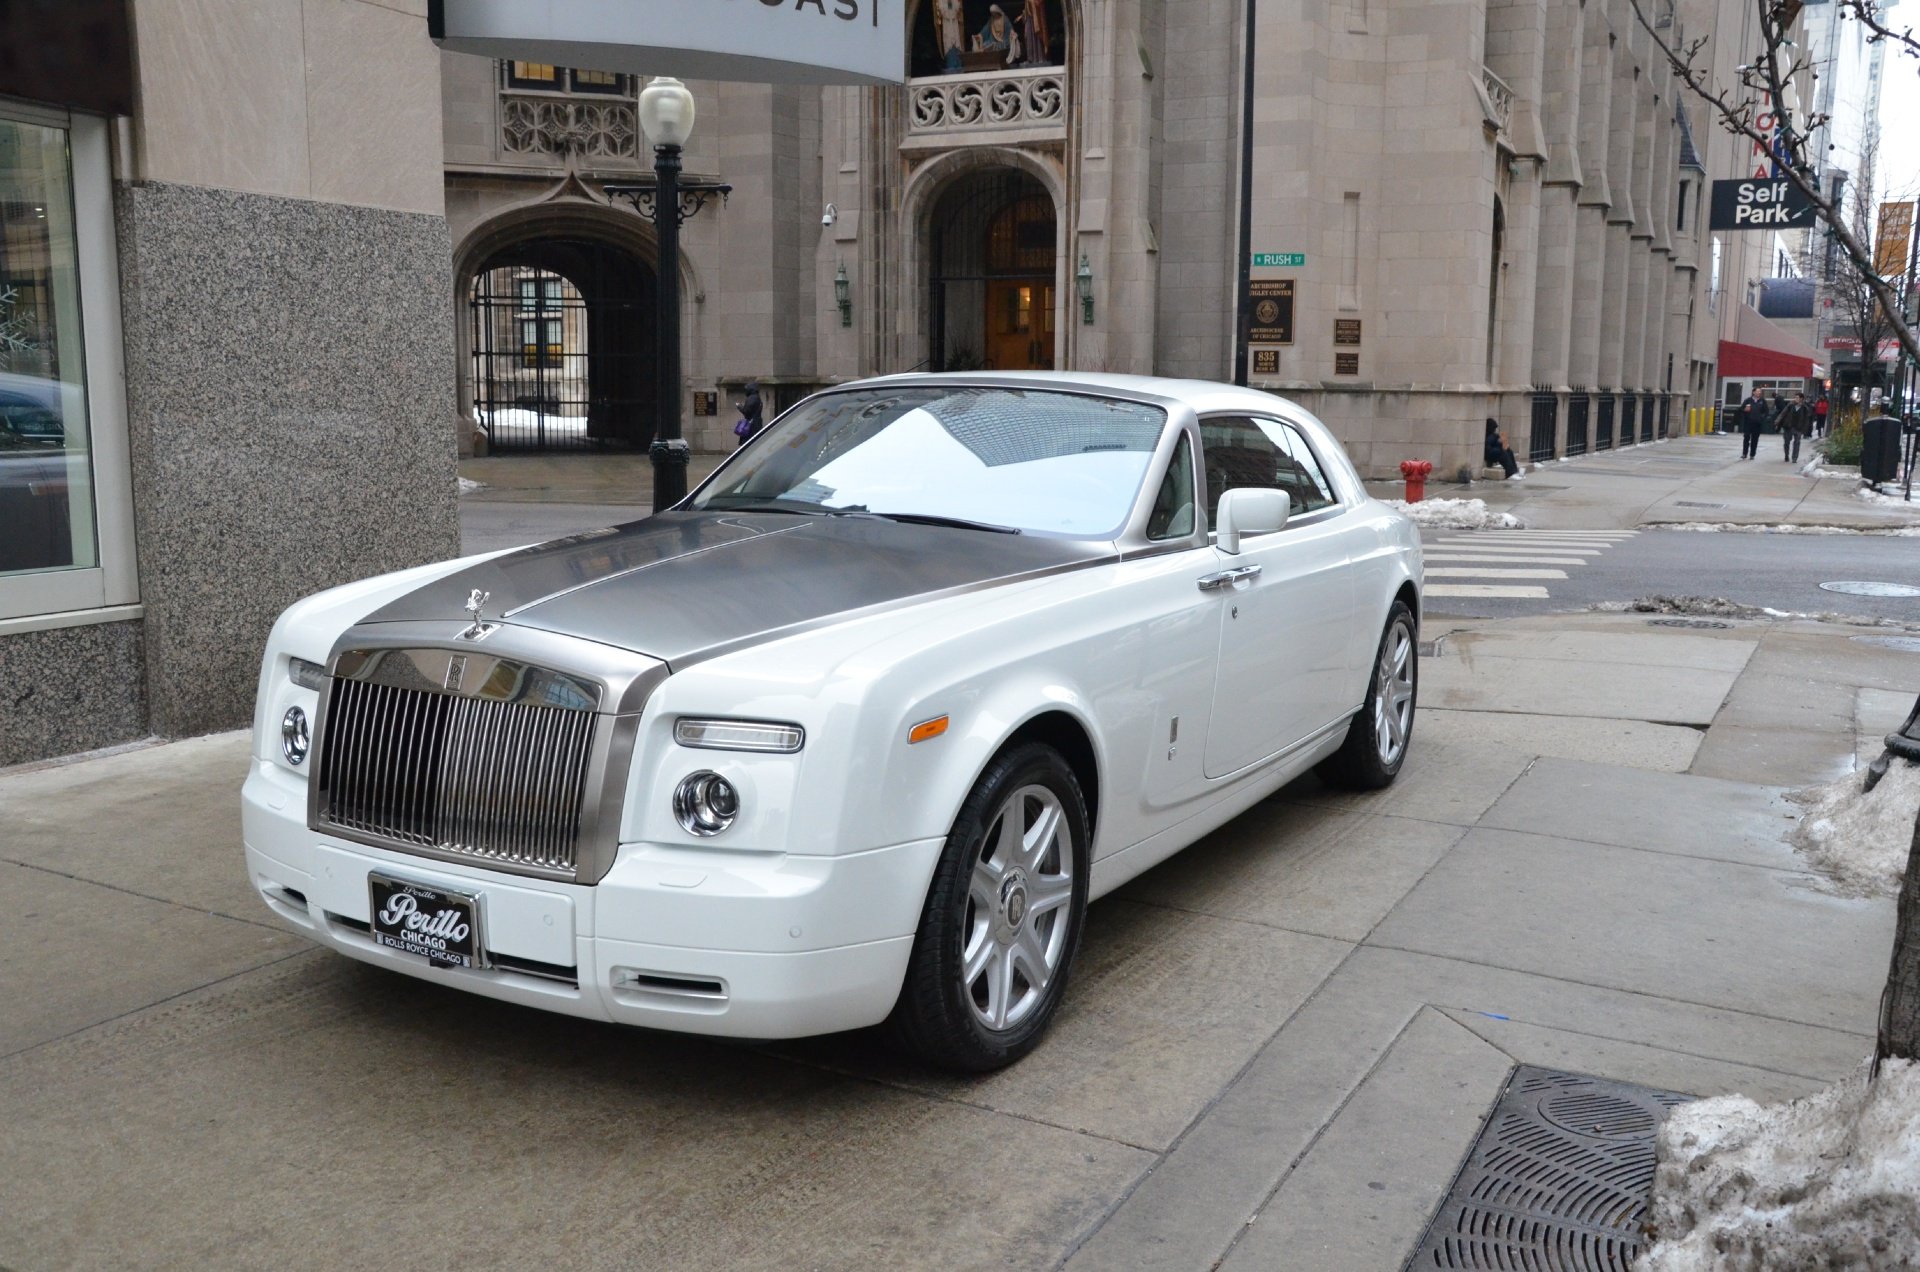 2009, Rolls royce, Phantom, Coupe, Cars, White Wallpaper